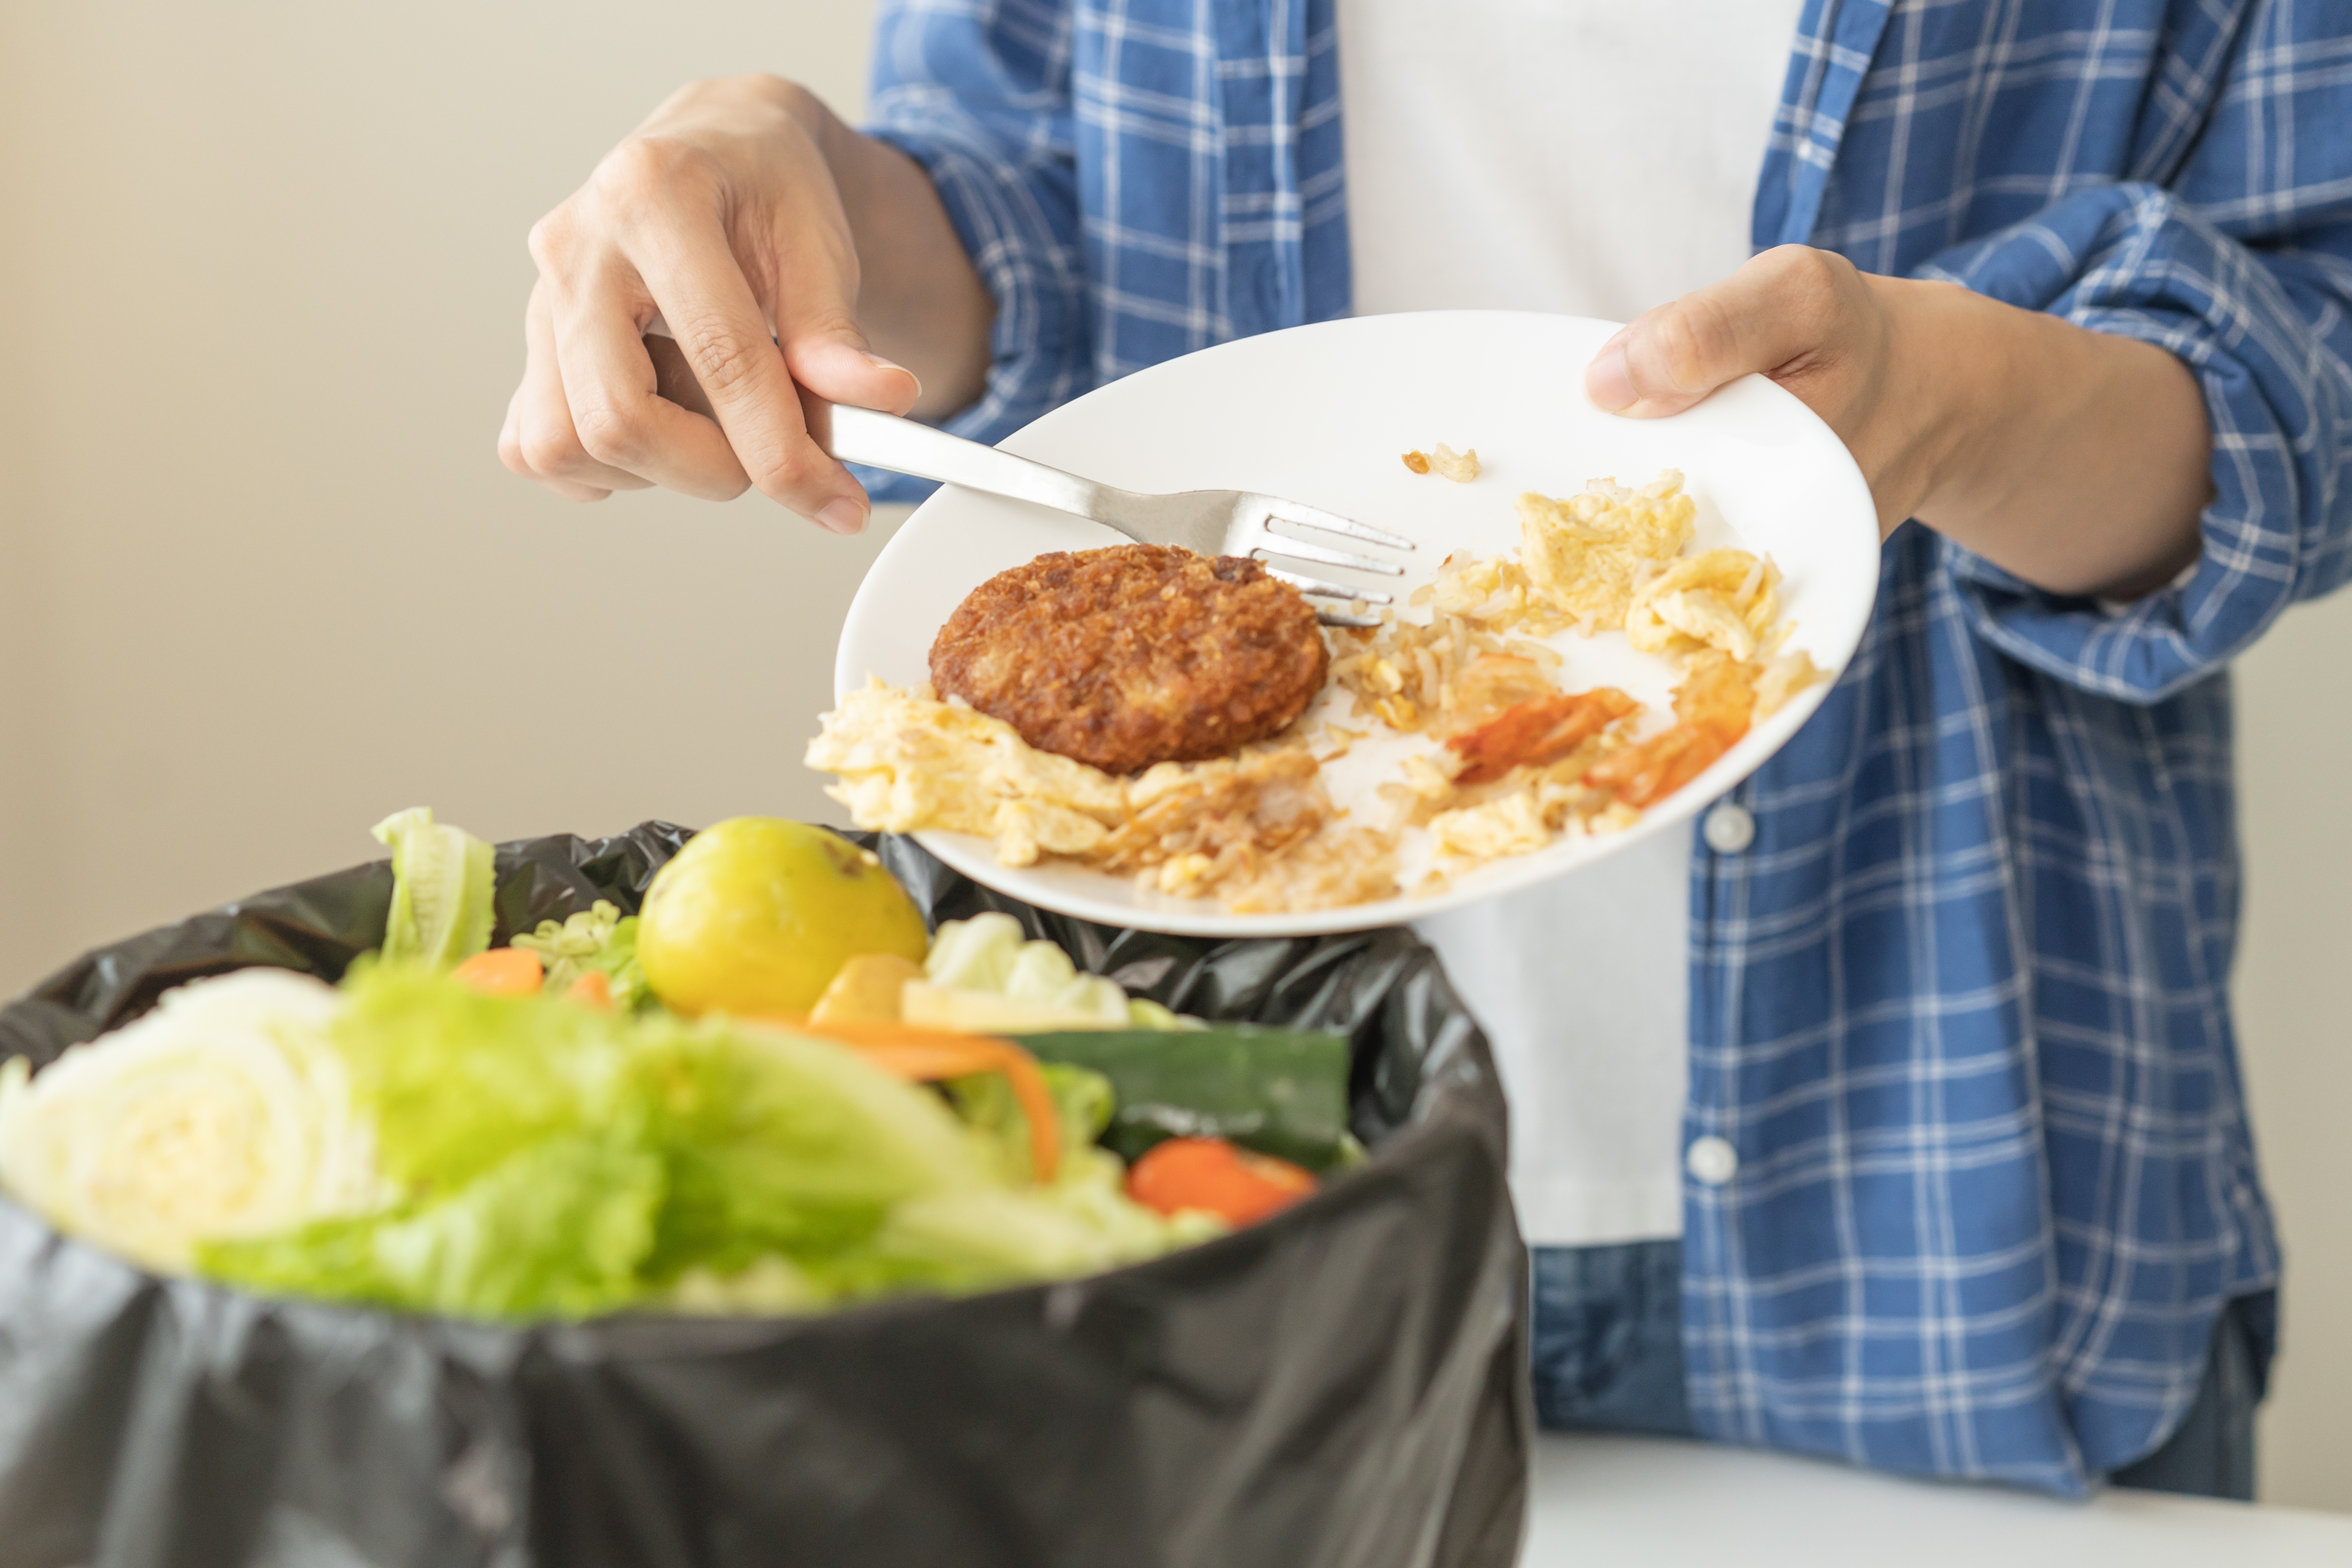 Un homme jetant de la nourriture dans une poubelle | Source : Shutterstock